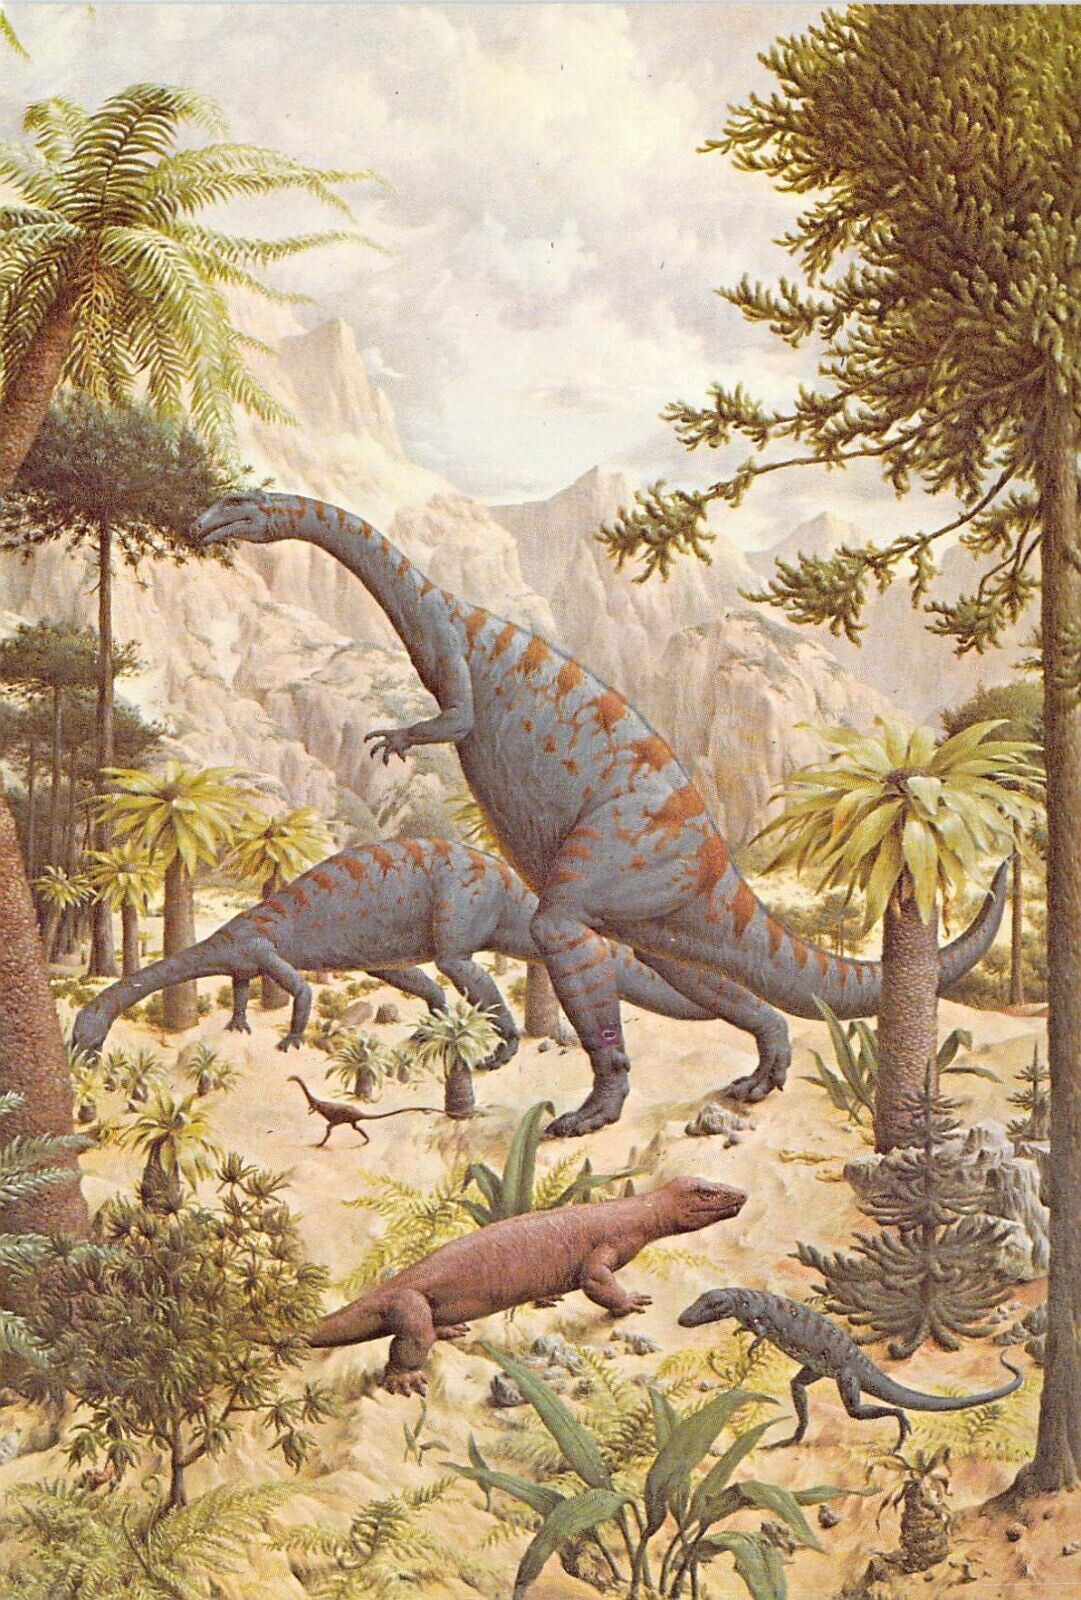 1977 Peabody #1  Museum Reptiles Mural 3 Dinosaur Podokesaurus 4x6 postcard L157